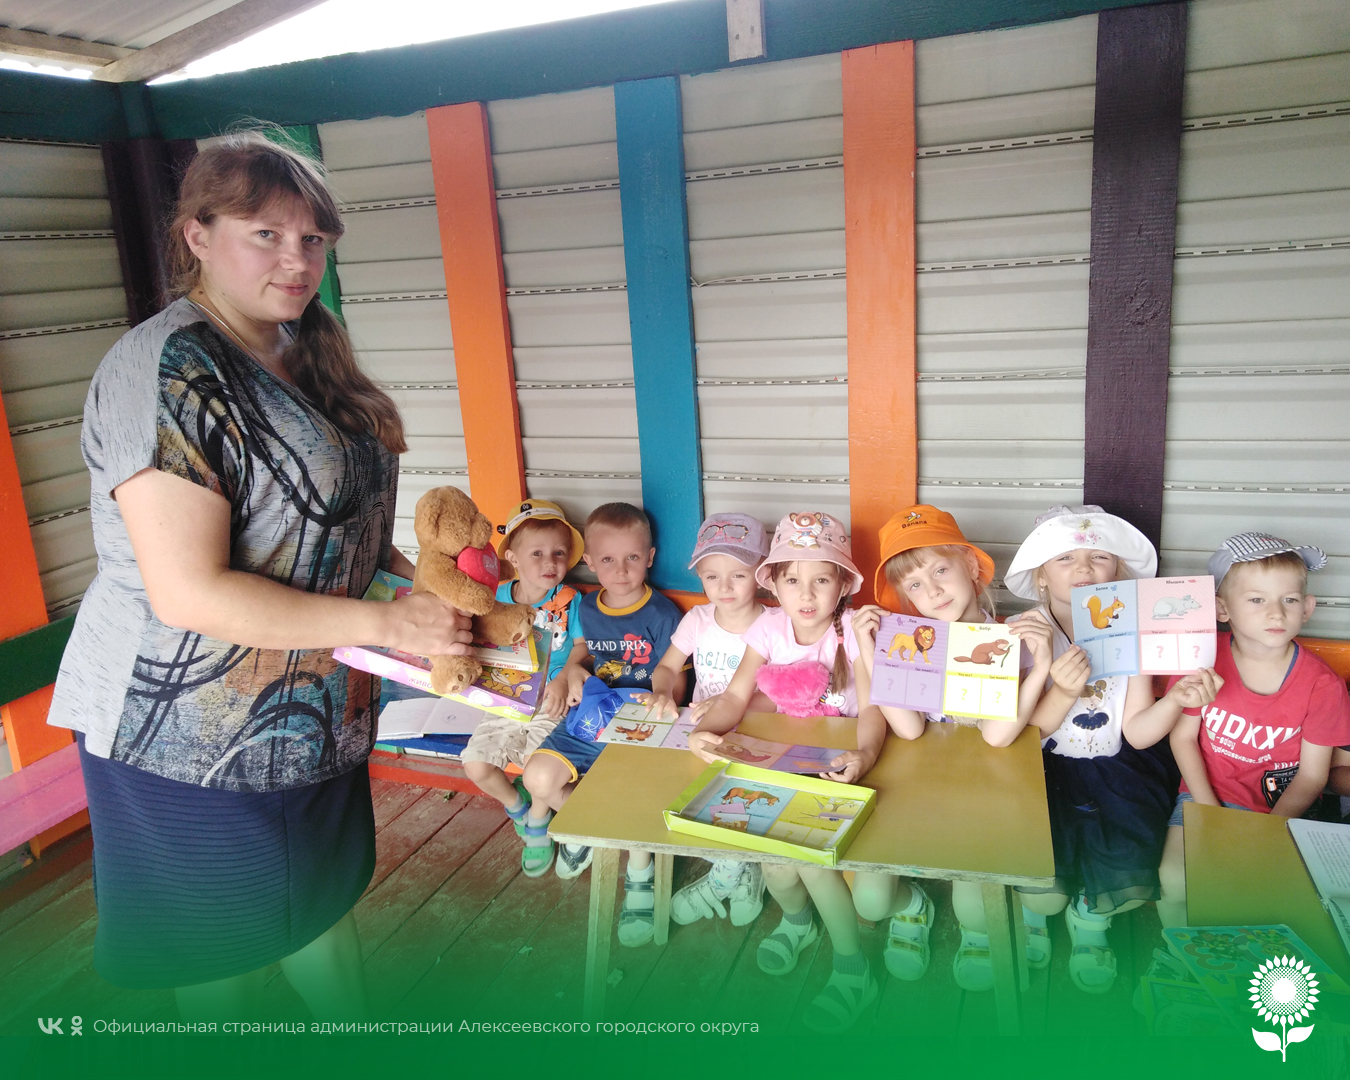 В детских садах Алексеевского городского округа прошло дидактическое мероприятие «Книжный круиз»